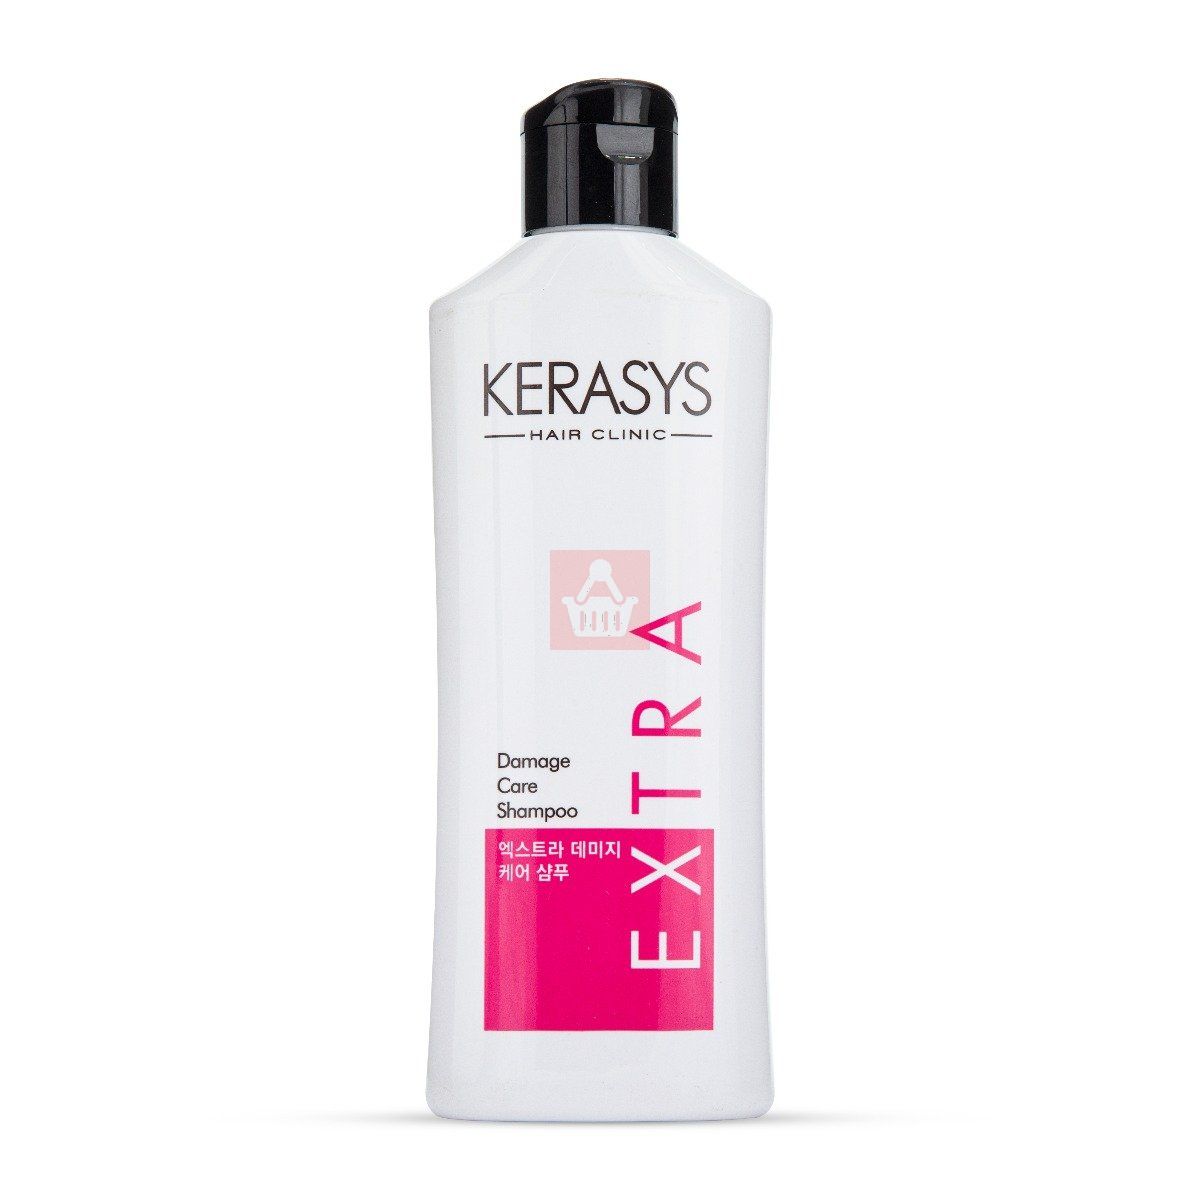 Kerasys Hair Clinic Damage Care Shampoo Extra 180ml